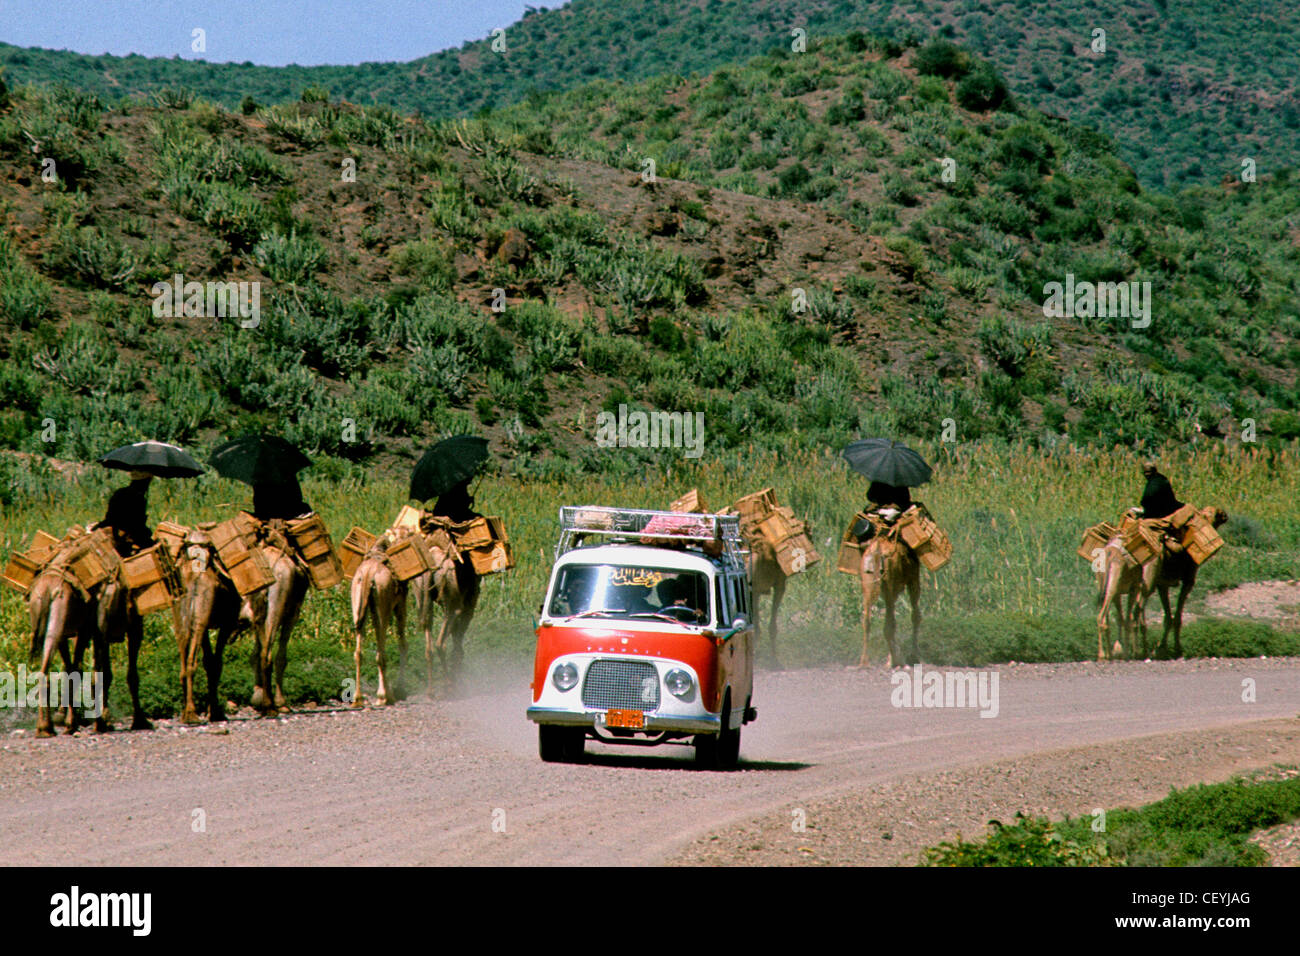 Strada yemenita. Il trasporto. I cammelli con laden Borse sottosella loro piloti protetti da sole e ombrelloni nero. Foto Stock